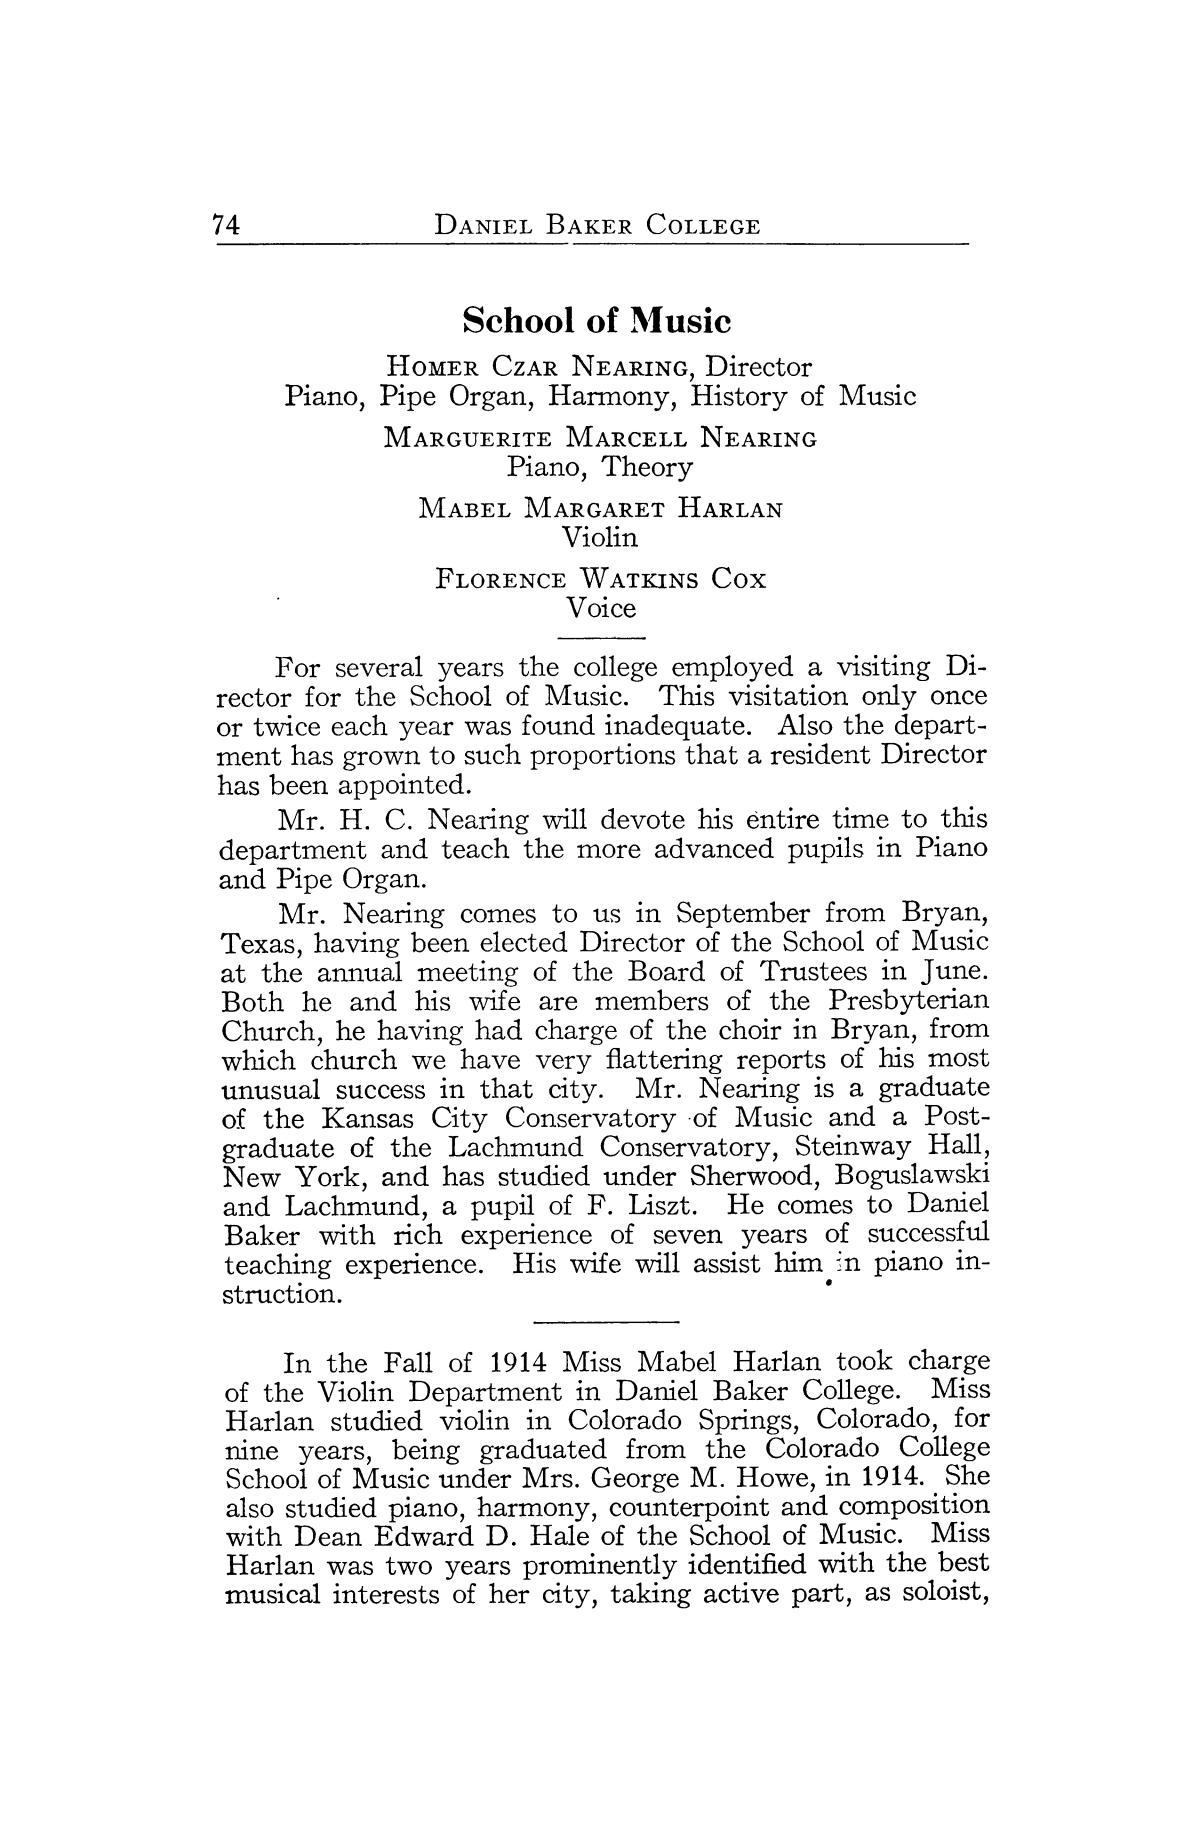 Catalog of Daniel Baker College, 1916-1917
                                                
                                                    74
                                                